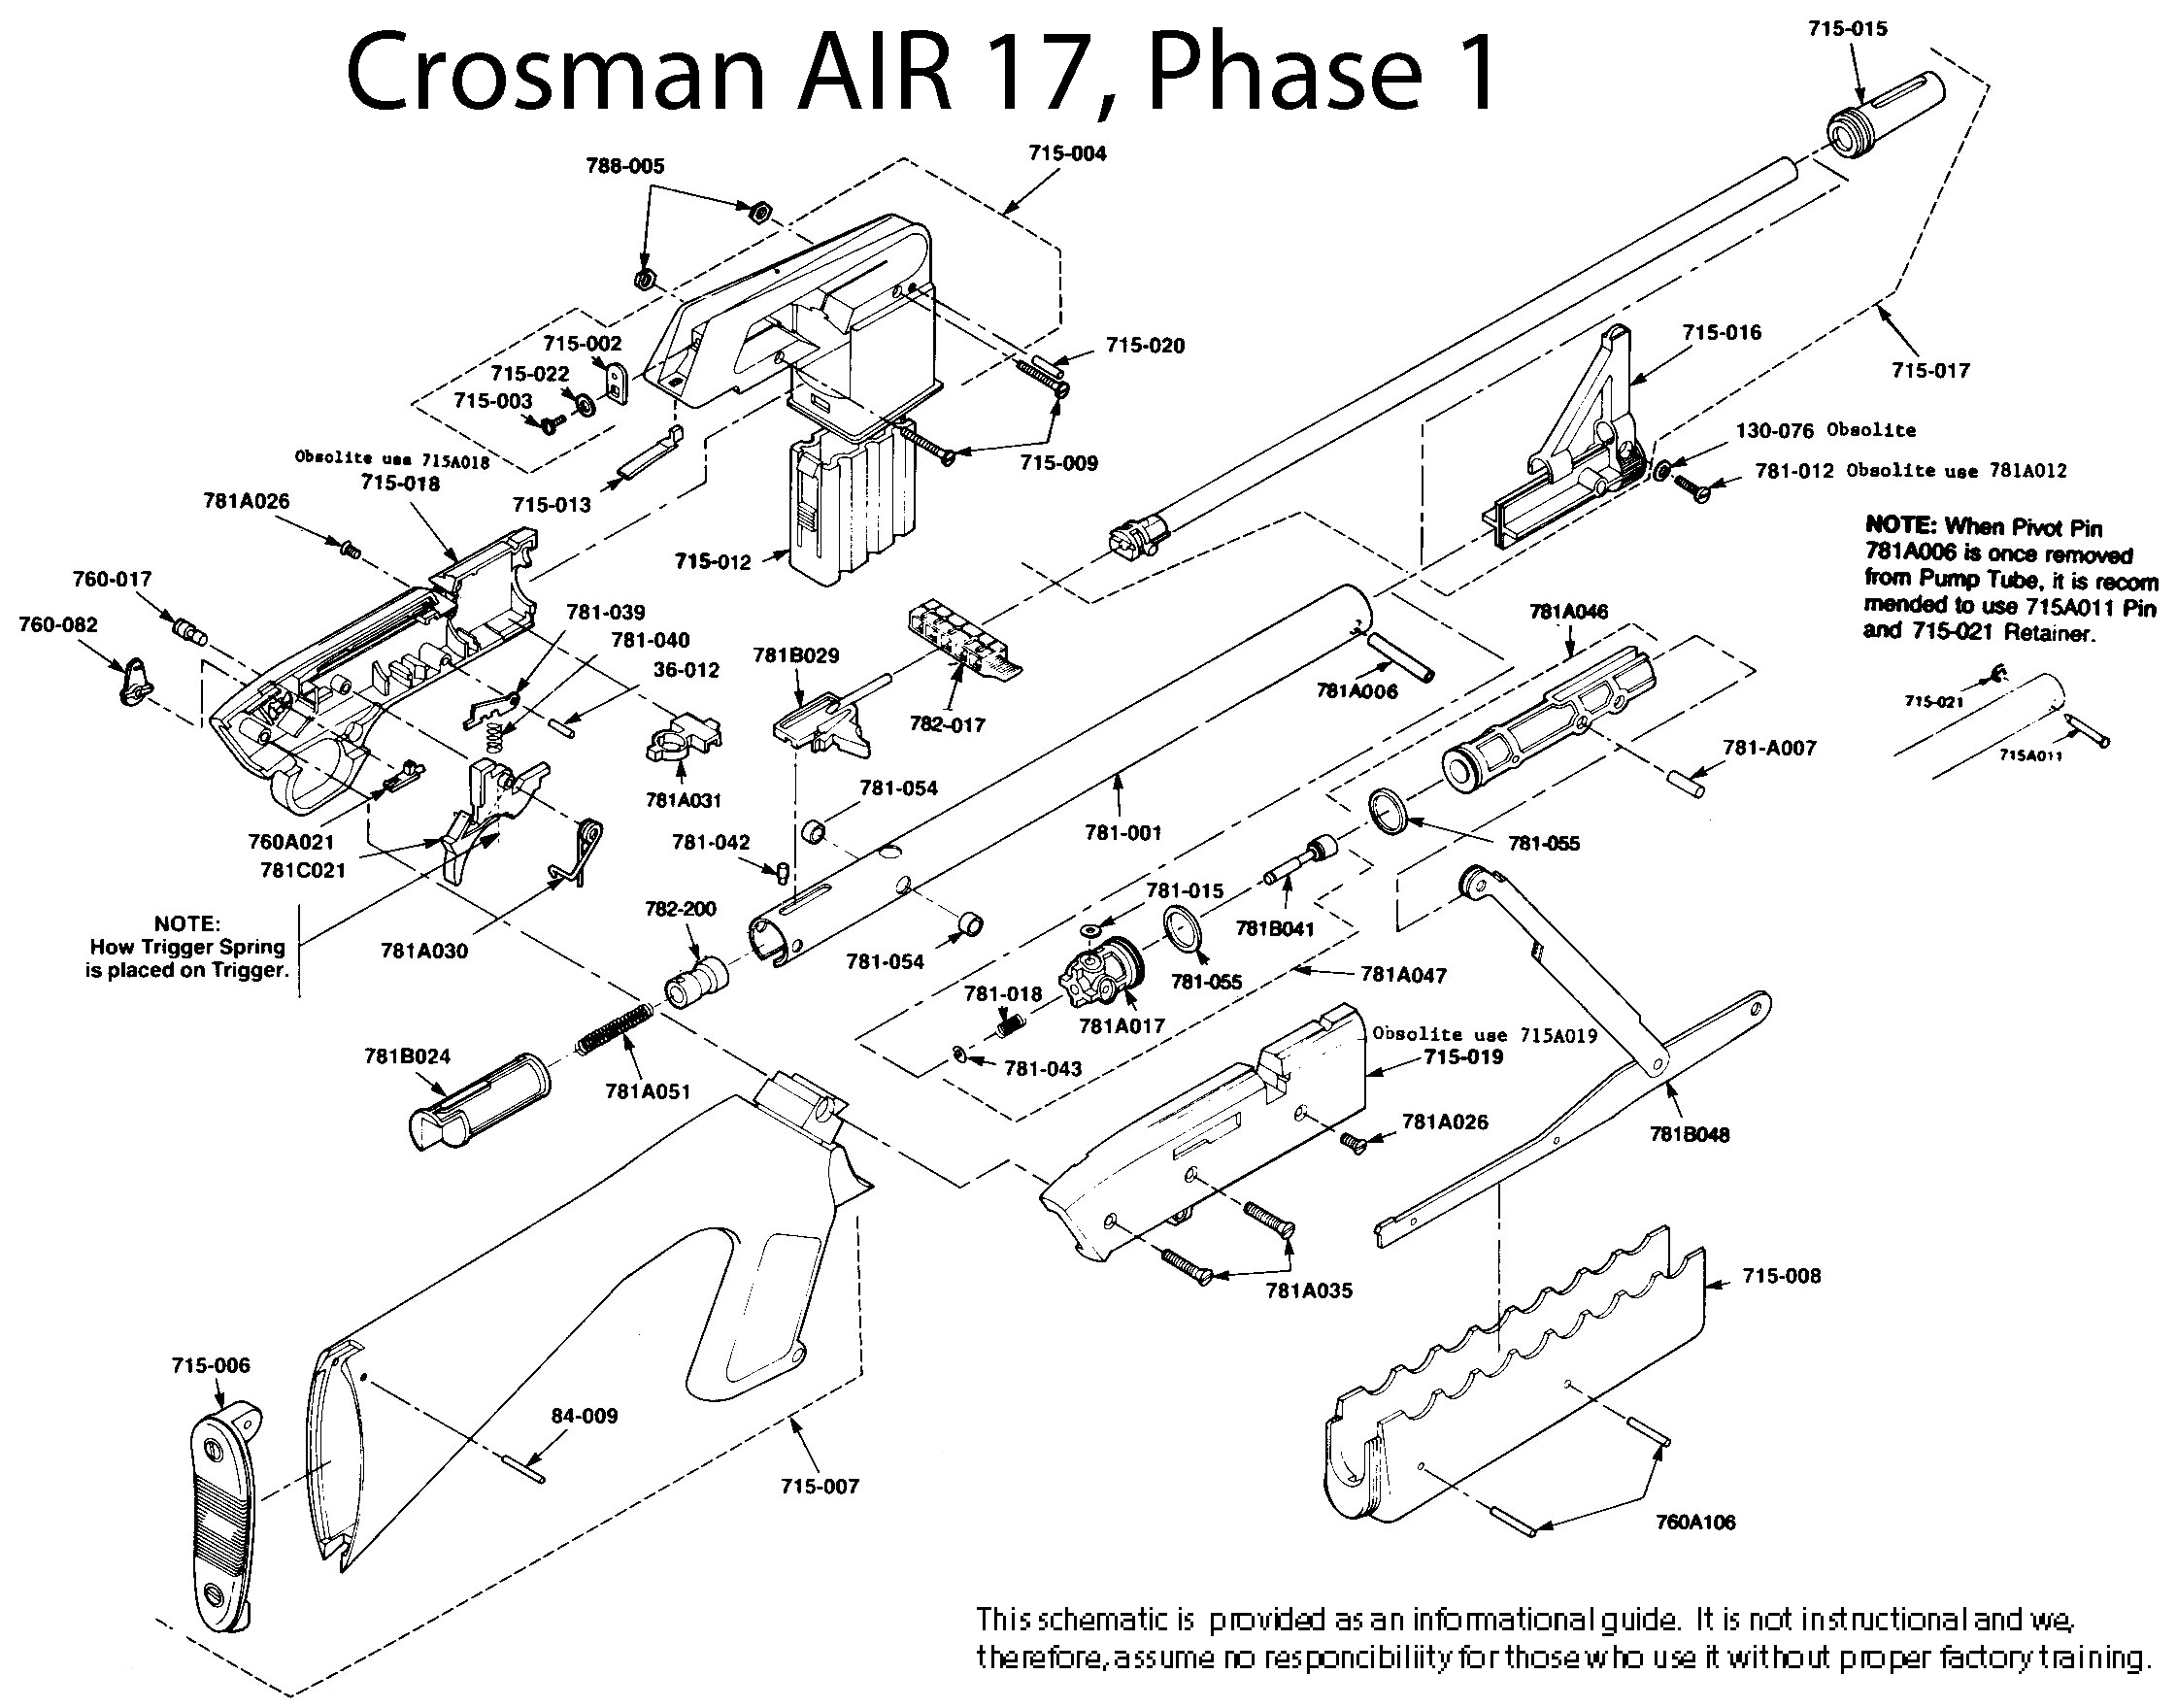 AIR-17 Schematic